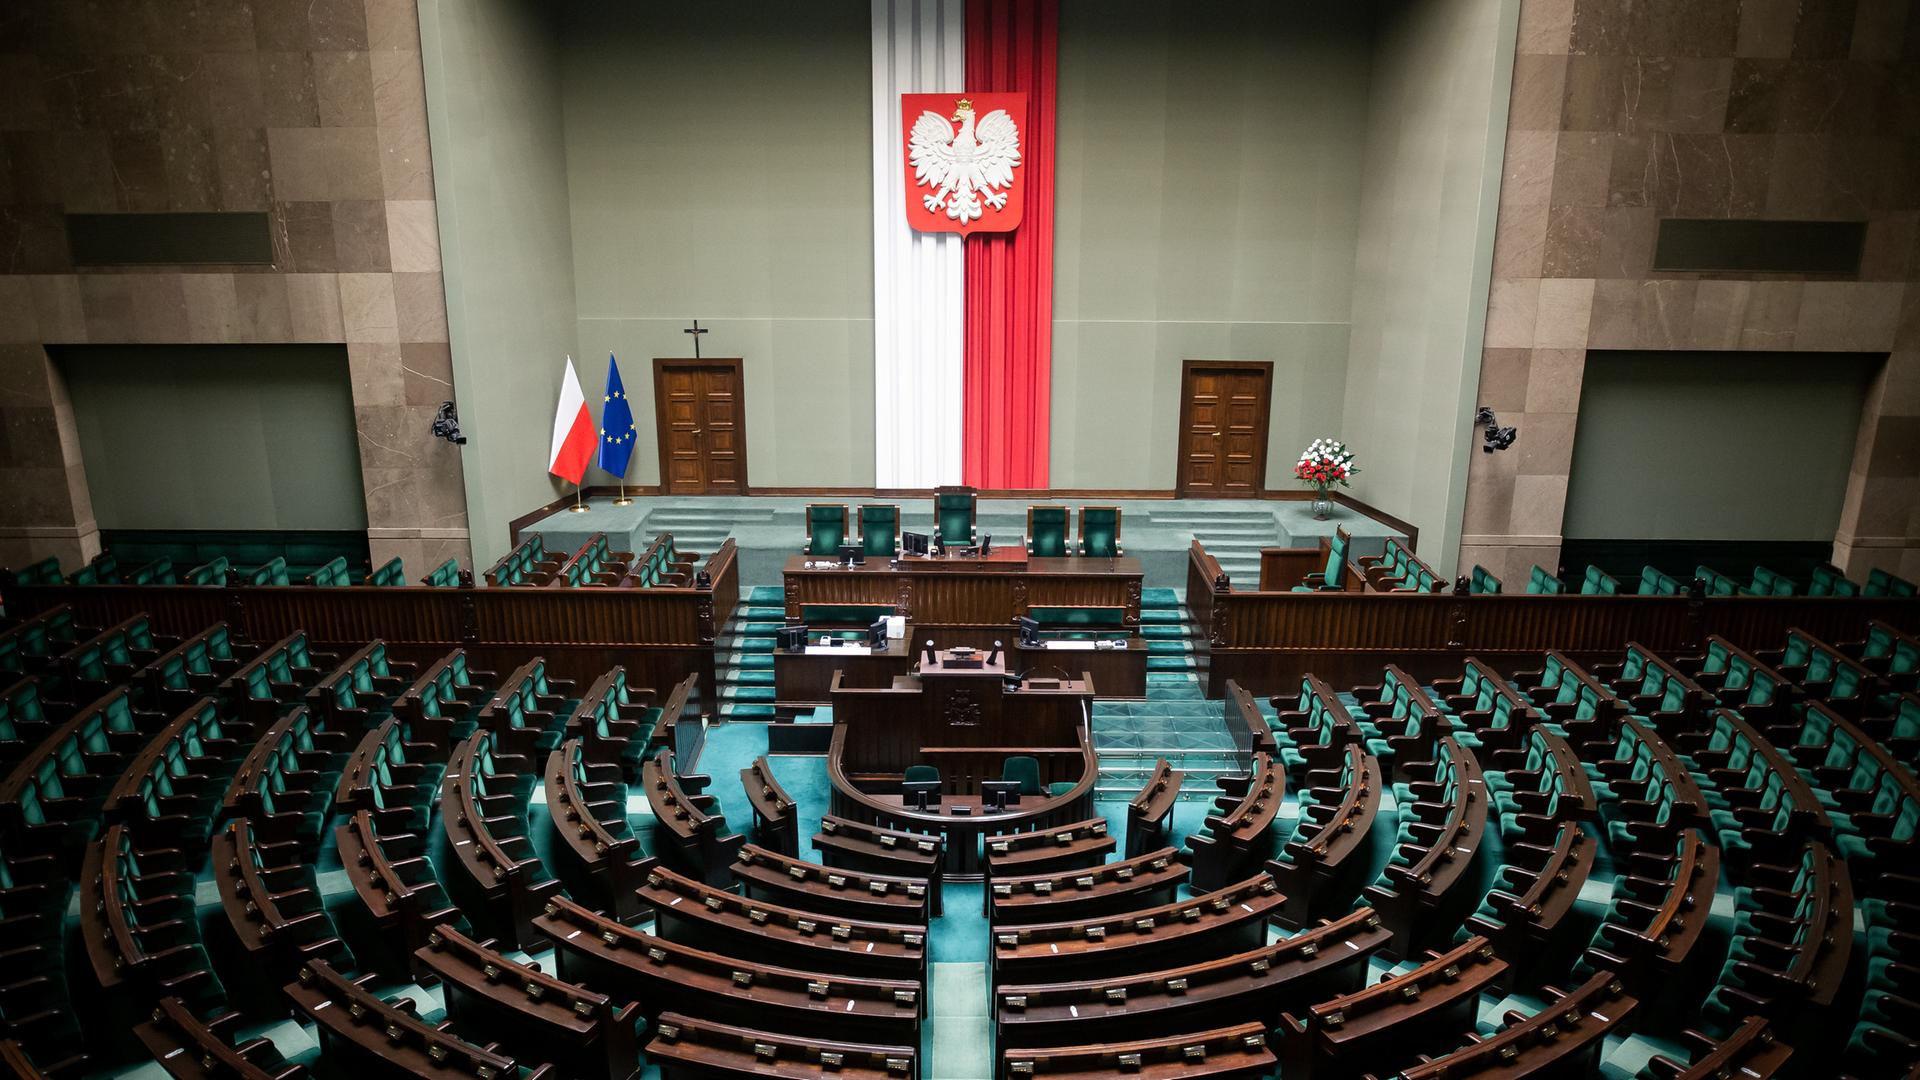 Blick von der Zuschauertribüne auf die leeren Reihen des Parlaments. An der Wand hängt eine längliche polnische Fahne.